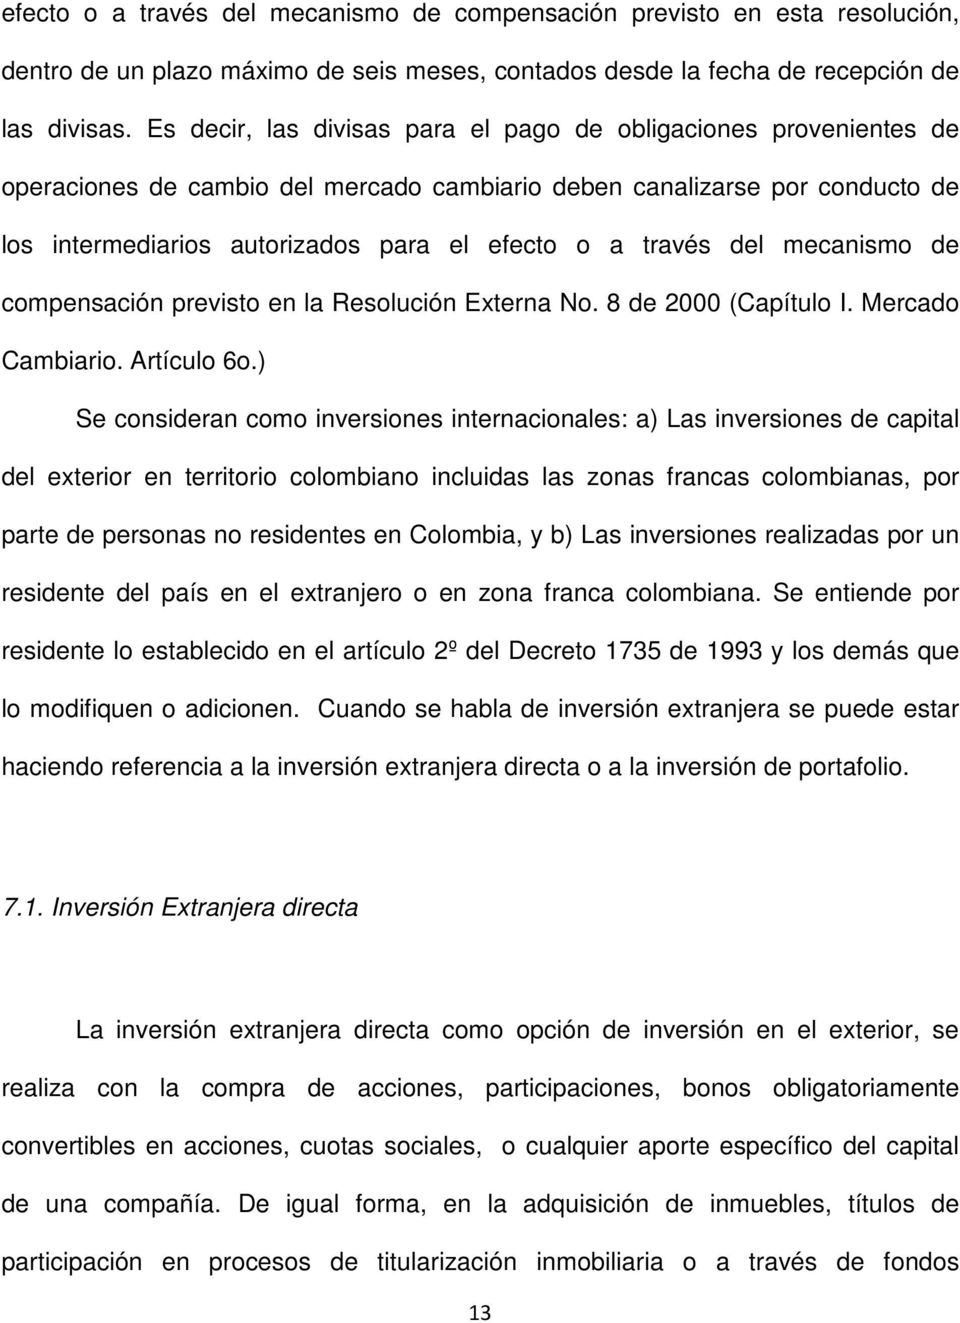 través del mecanismo de compensación previsto en la Resolución Externa No. 8 de 2000 (Capítulo I. Mercado Cambiario. Artículo 6o.